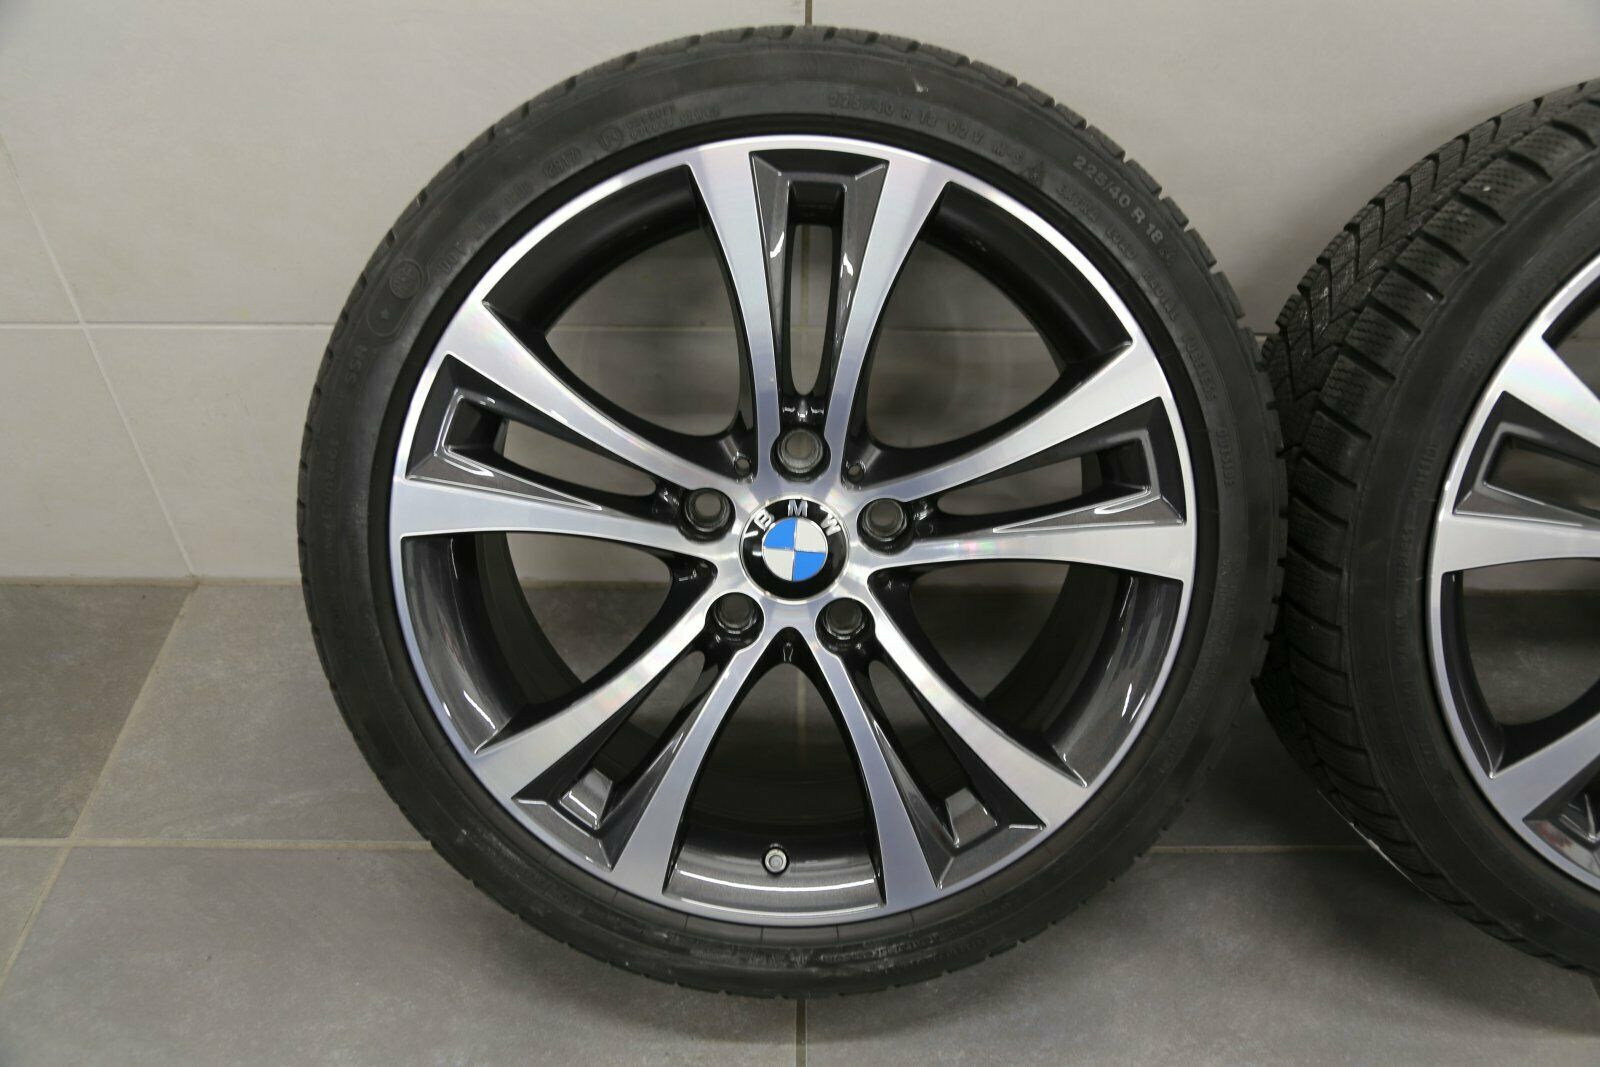 18-inch dubbelspaaks 384 winterwielen BMW 1 Serie F20 F21 2 Serie F22 F23 velgen 6796210